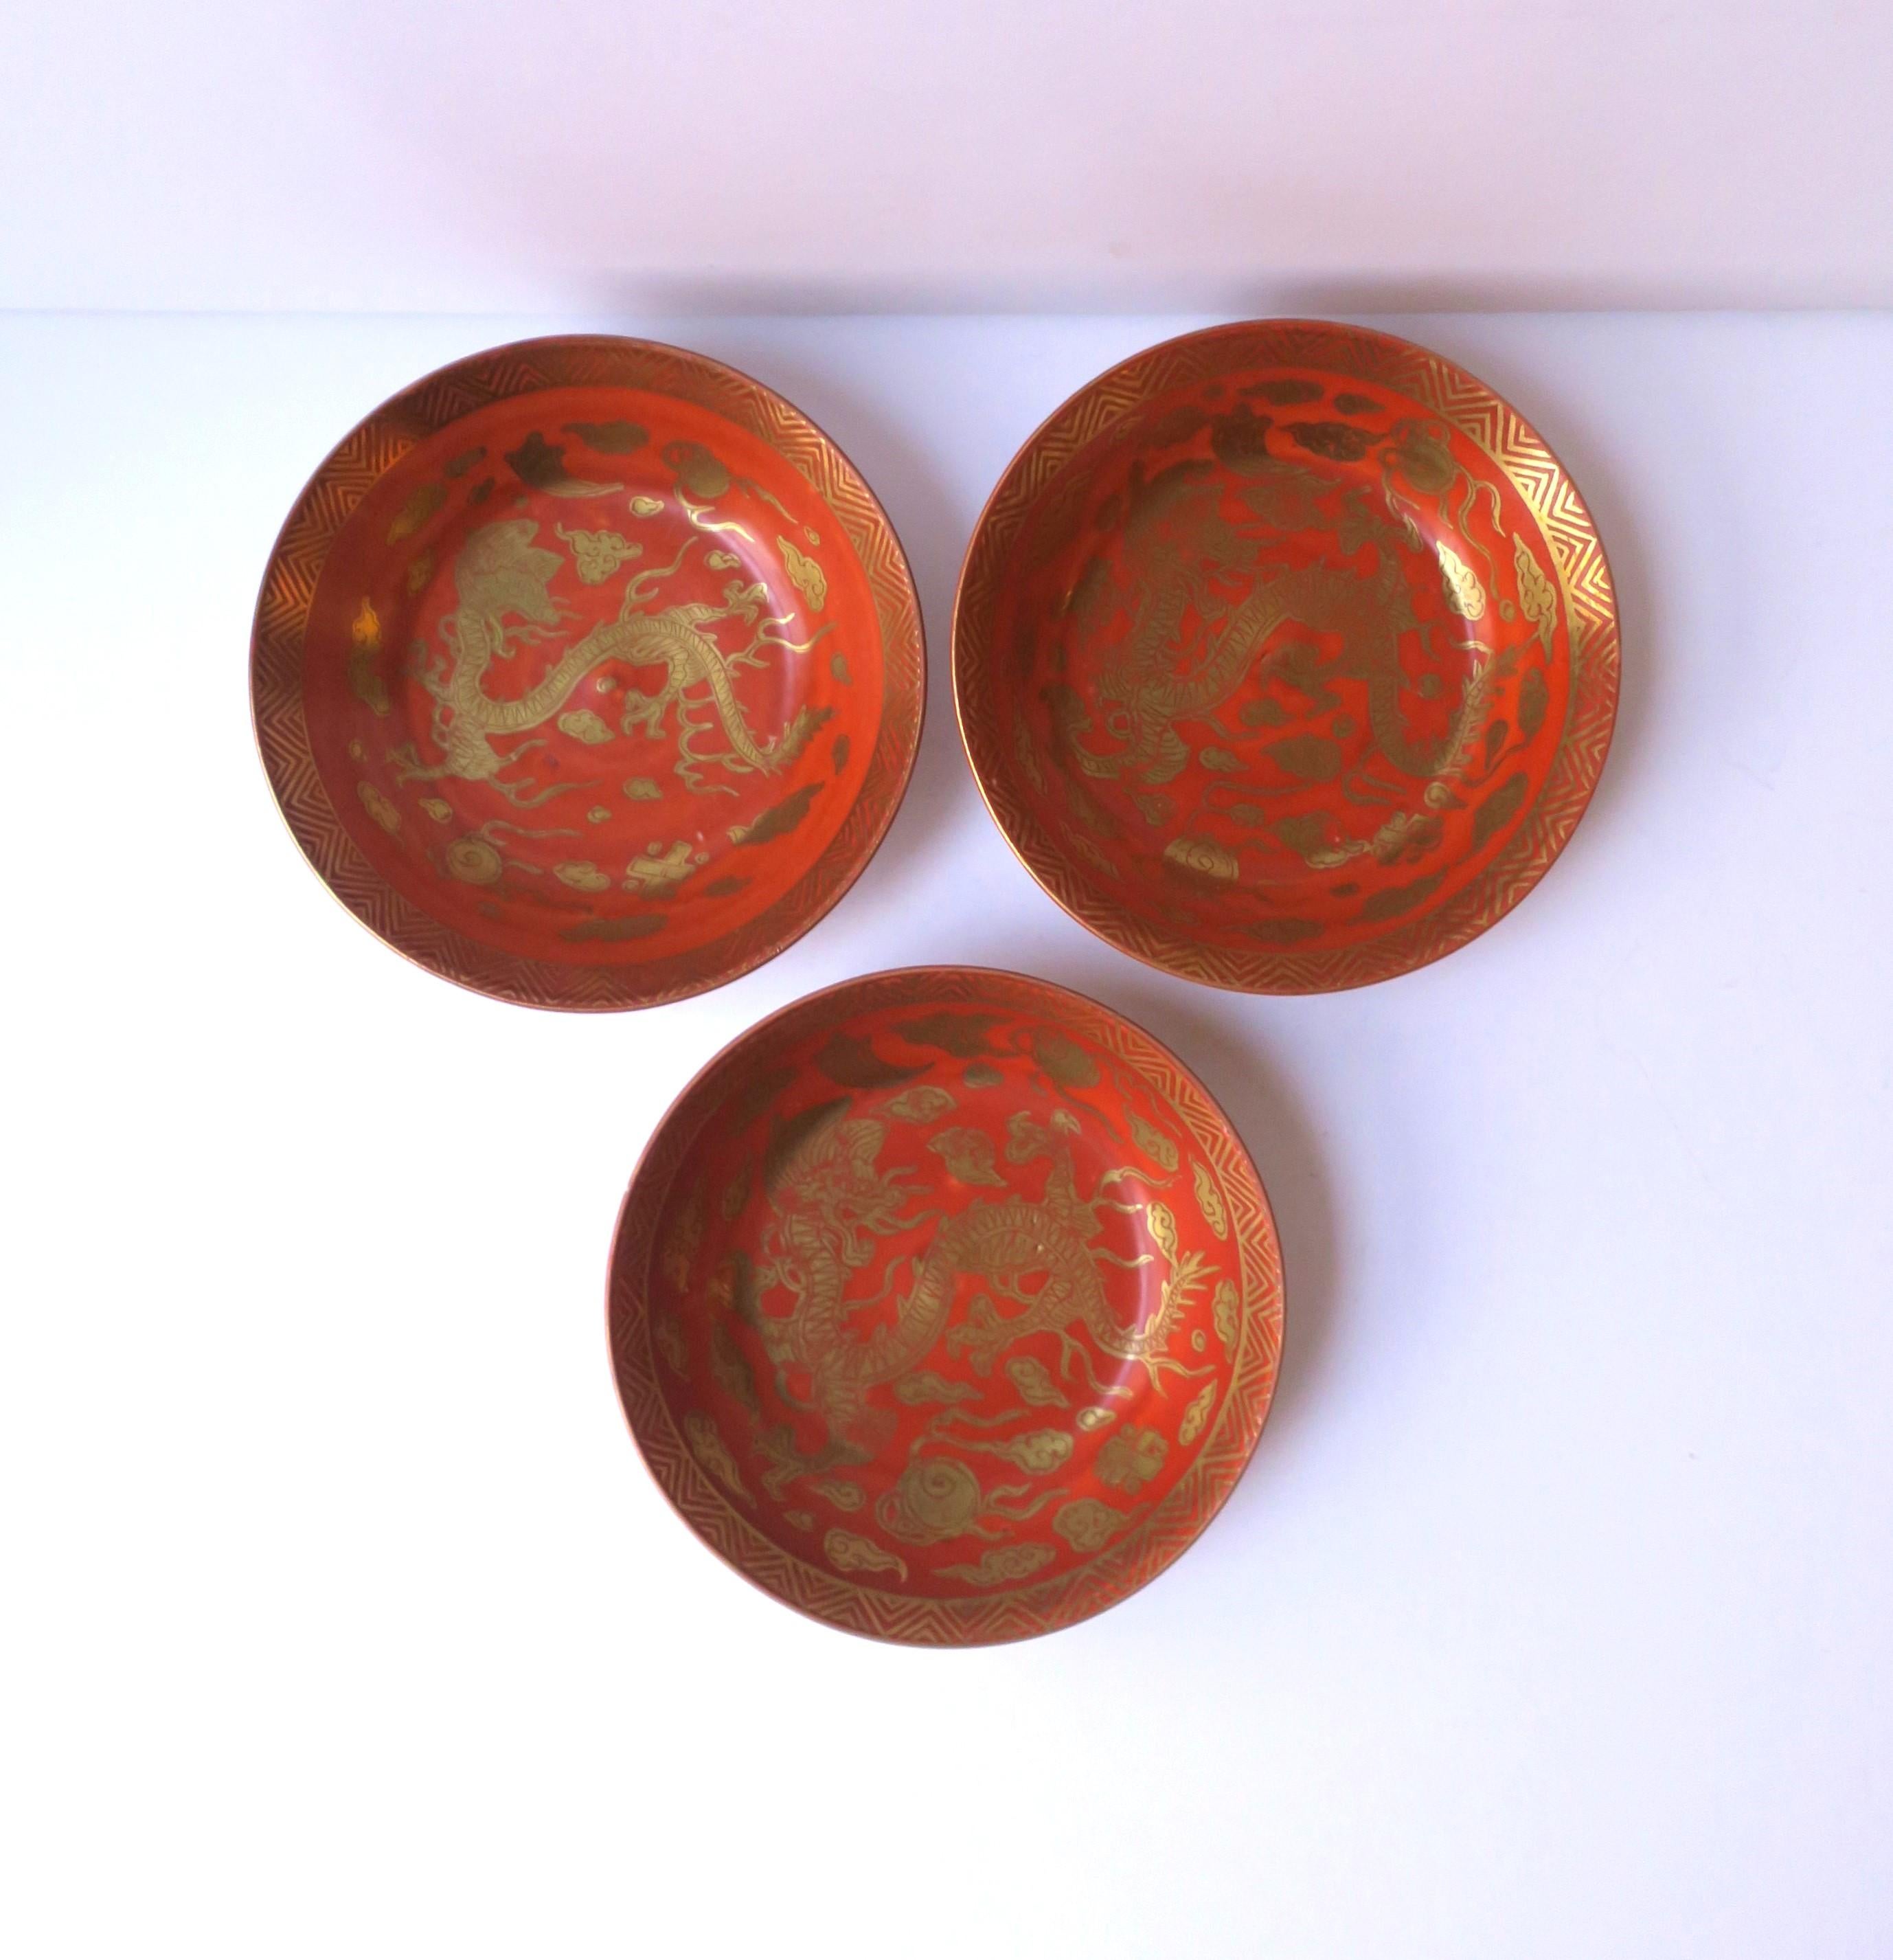 Eine Reihe von drei (3) japanischen Porzellan Gold und rot Finger oder Nuss Schalen mit Drachen-Design, ca. Mitte des 20. Jahrhunderts, Japan. Wunderschönes Drachendetail mit flammender Zunge und Chevron-Muster am Rand. Ein großartiges Set für